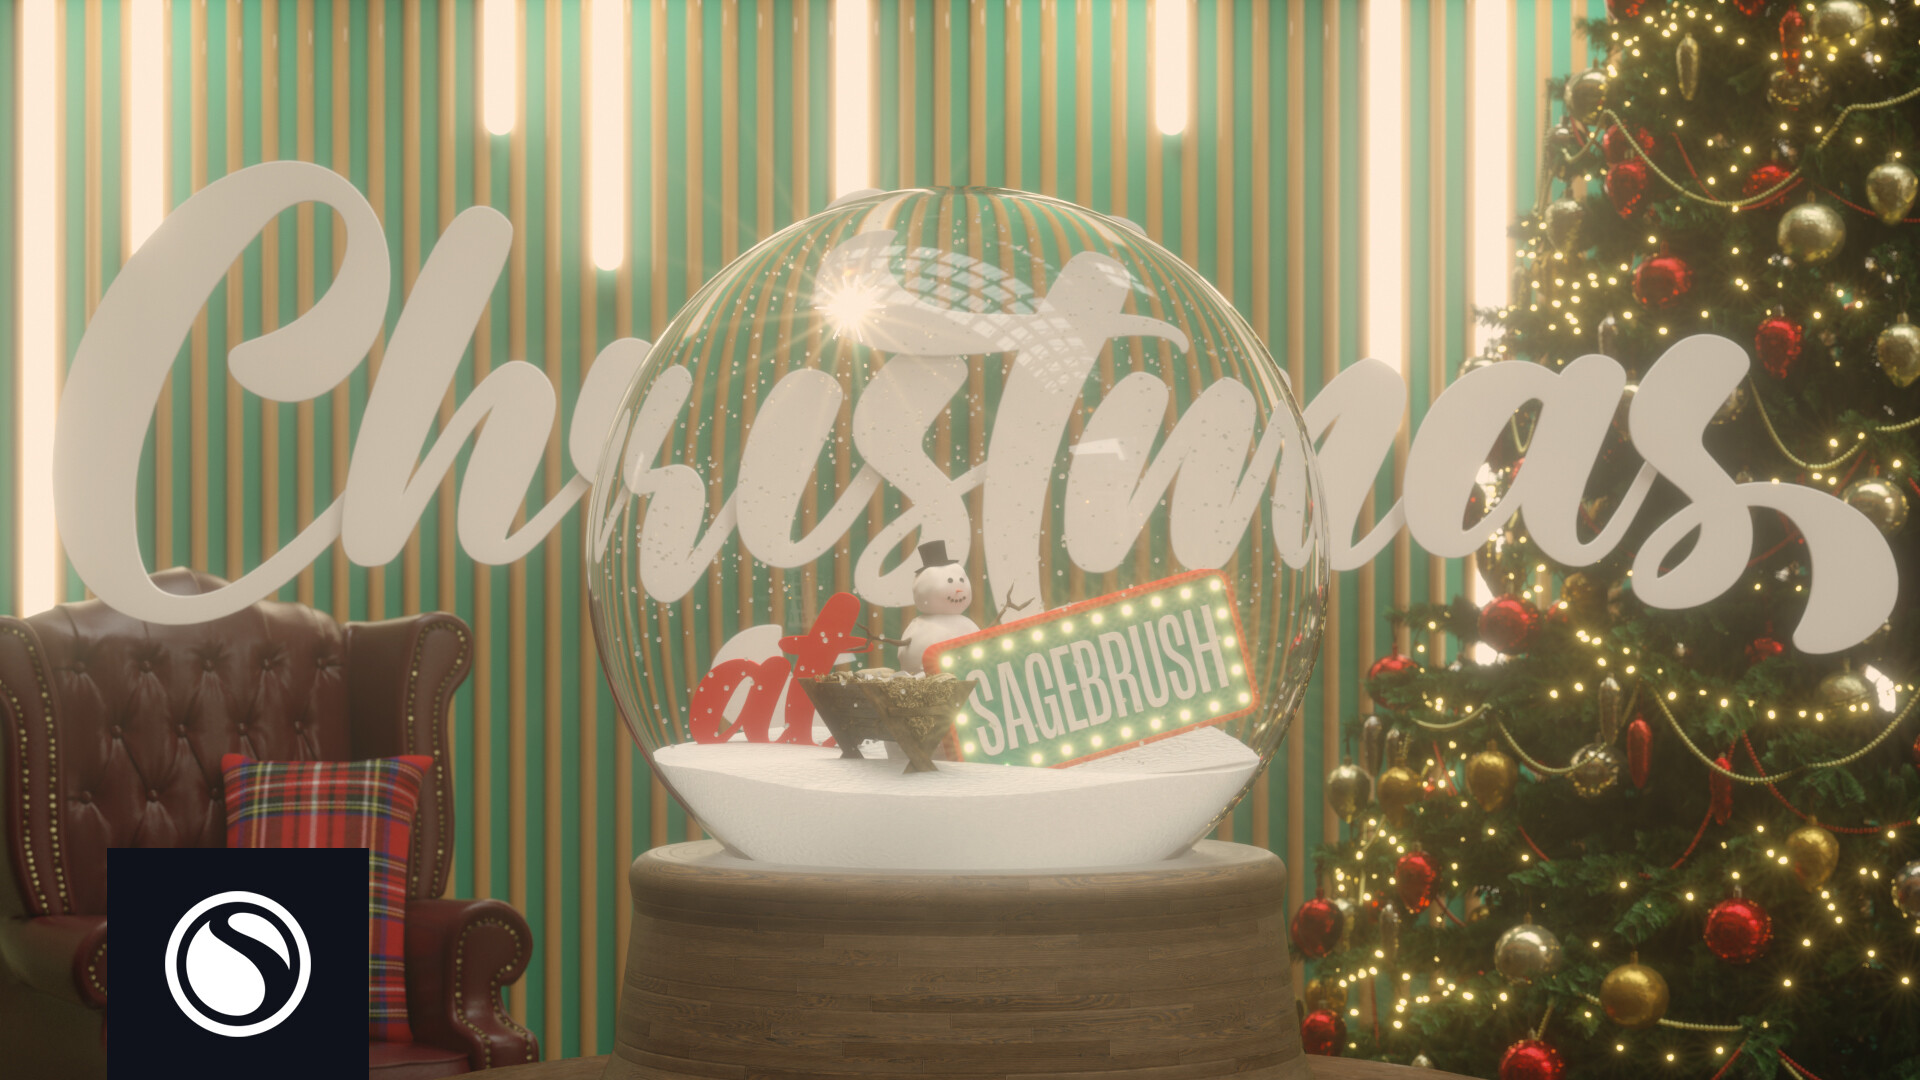 Watch Christmas at Sagebrush 2022 - Christmas at Sagebrush 2022